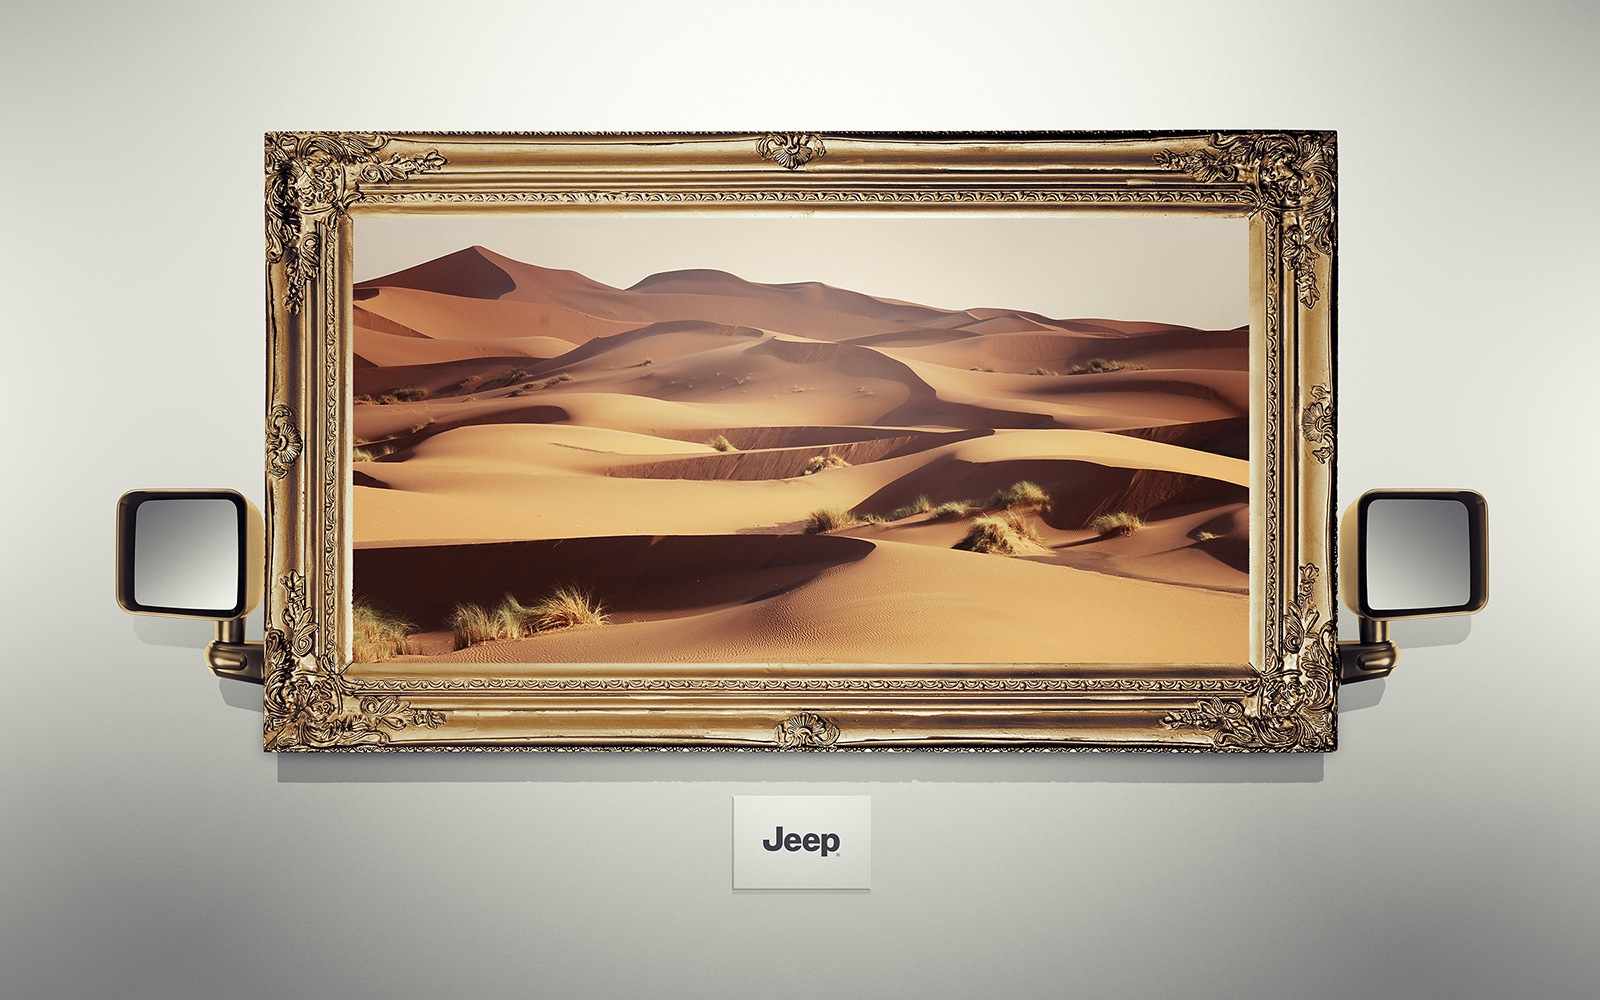 上海广告设计公司尚略广告分享：JEEP吉普汽车风景系列平面广告创意设计-沙漠